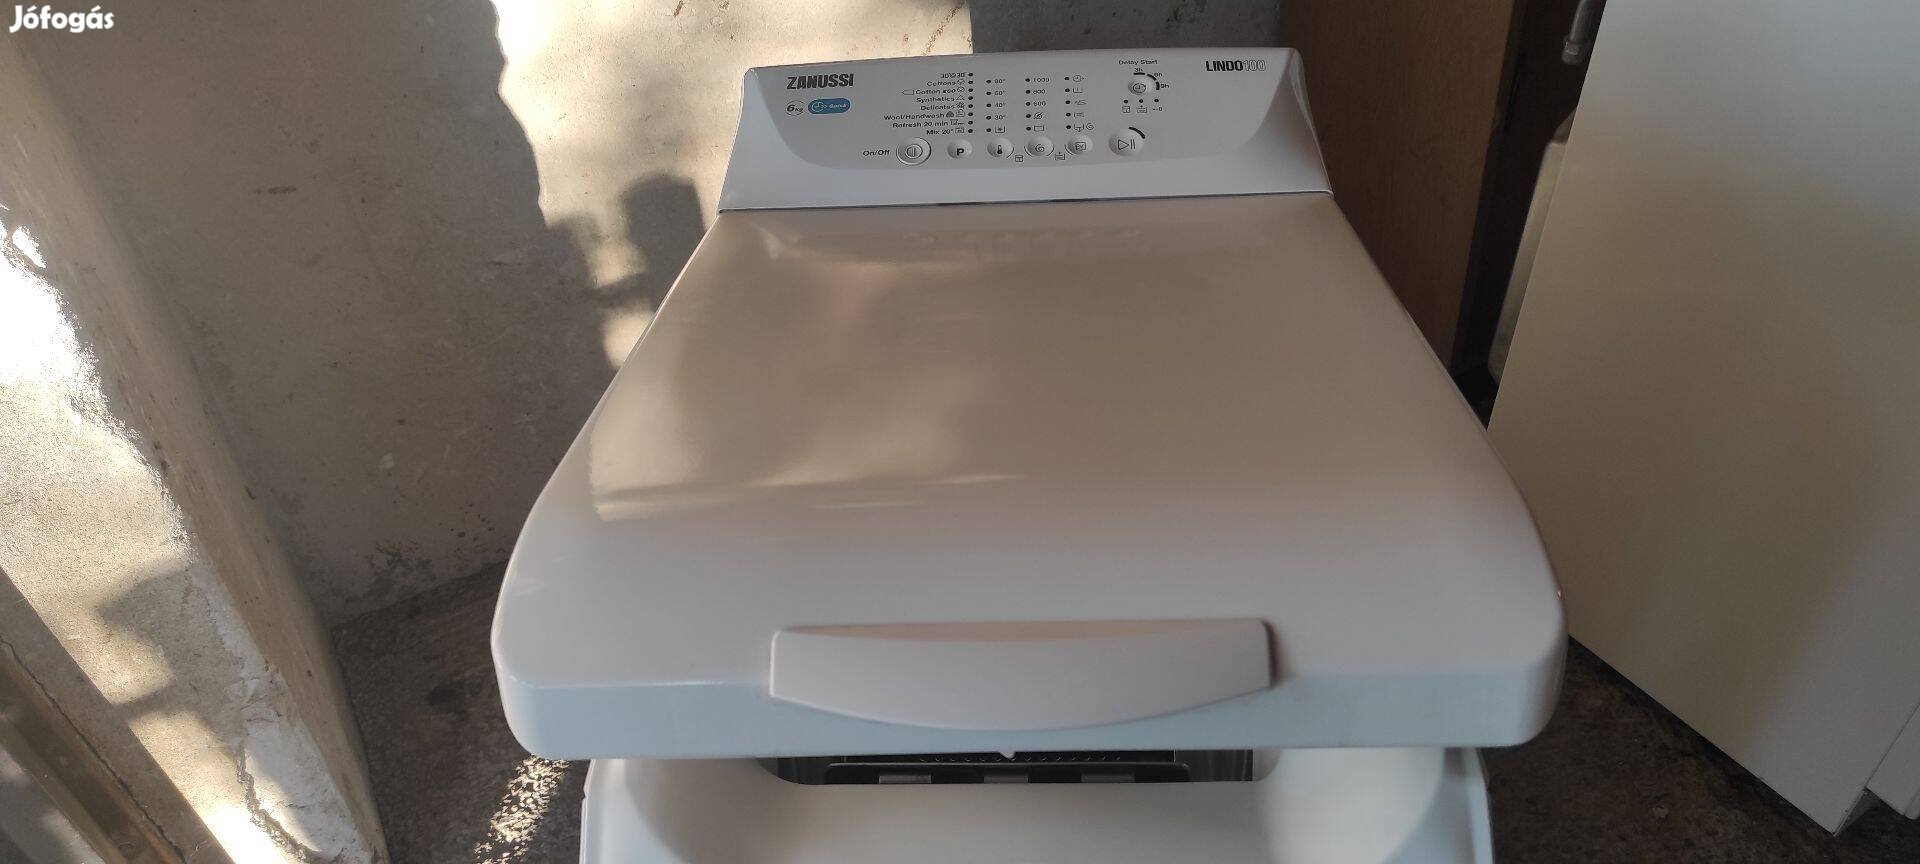 Eladó Zanussi Lindo100 felültöltős mosógép